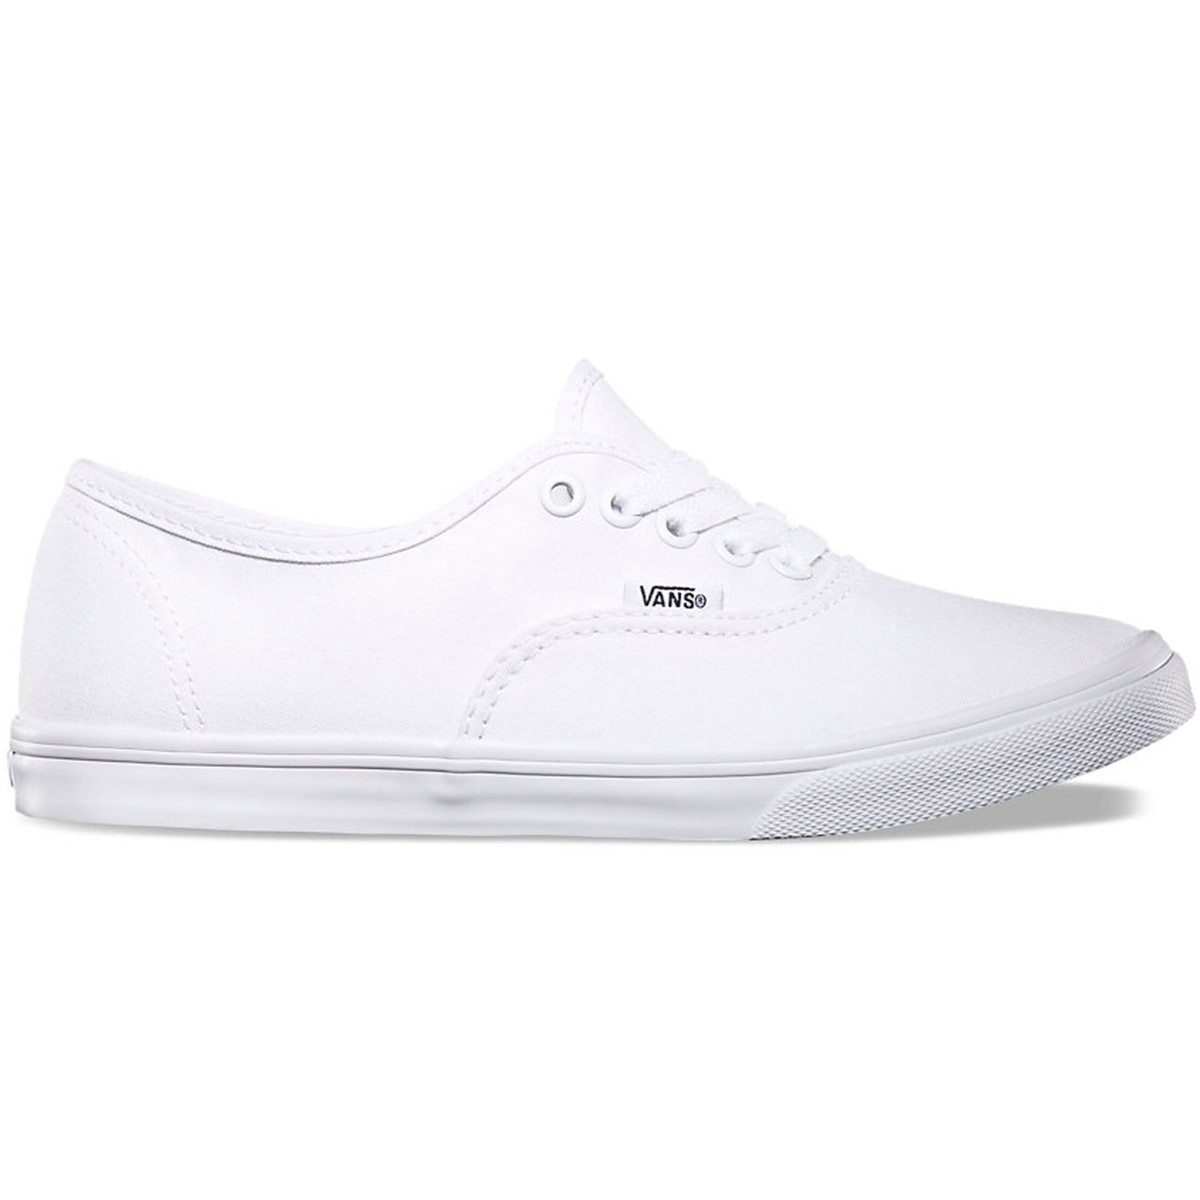 Vans Unisex Authentic Lo Pro Shoes - White, 8.5